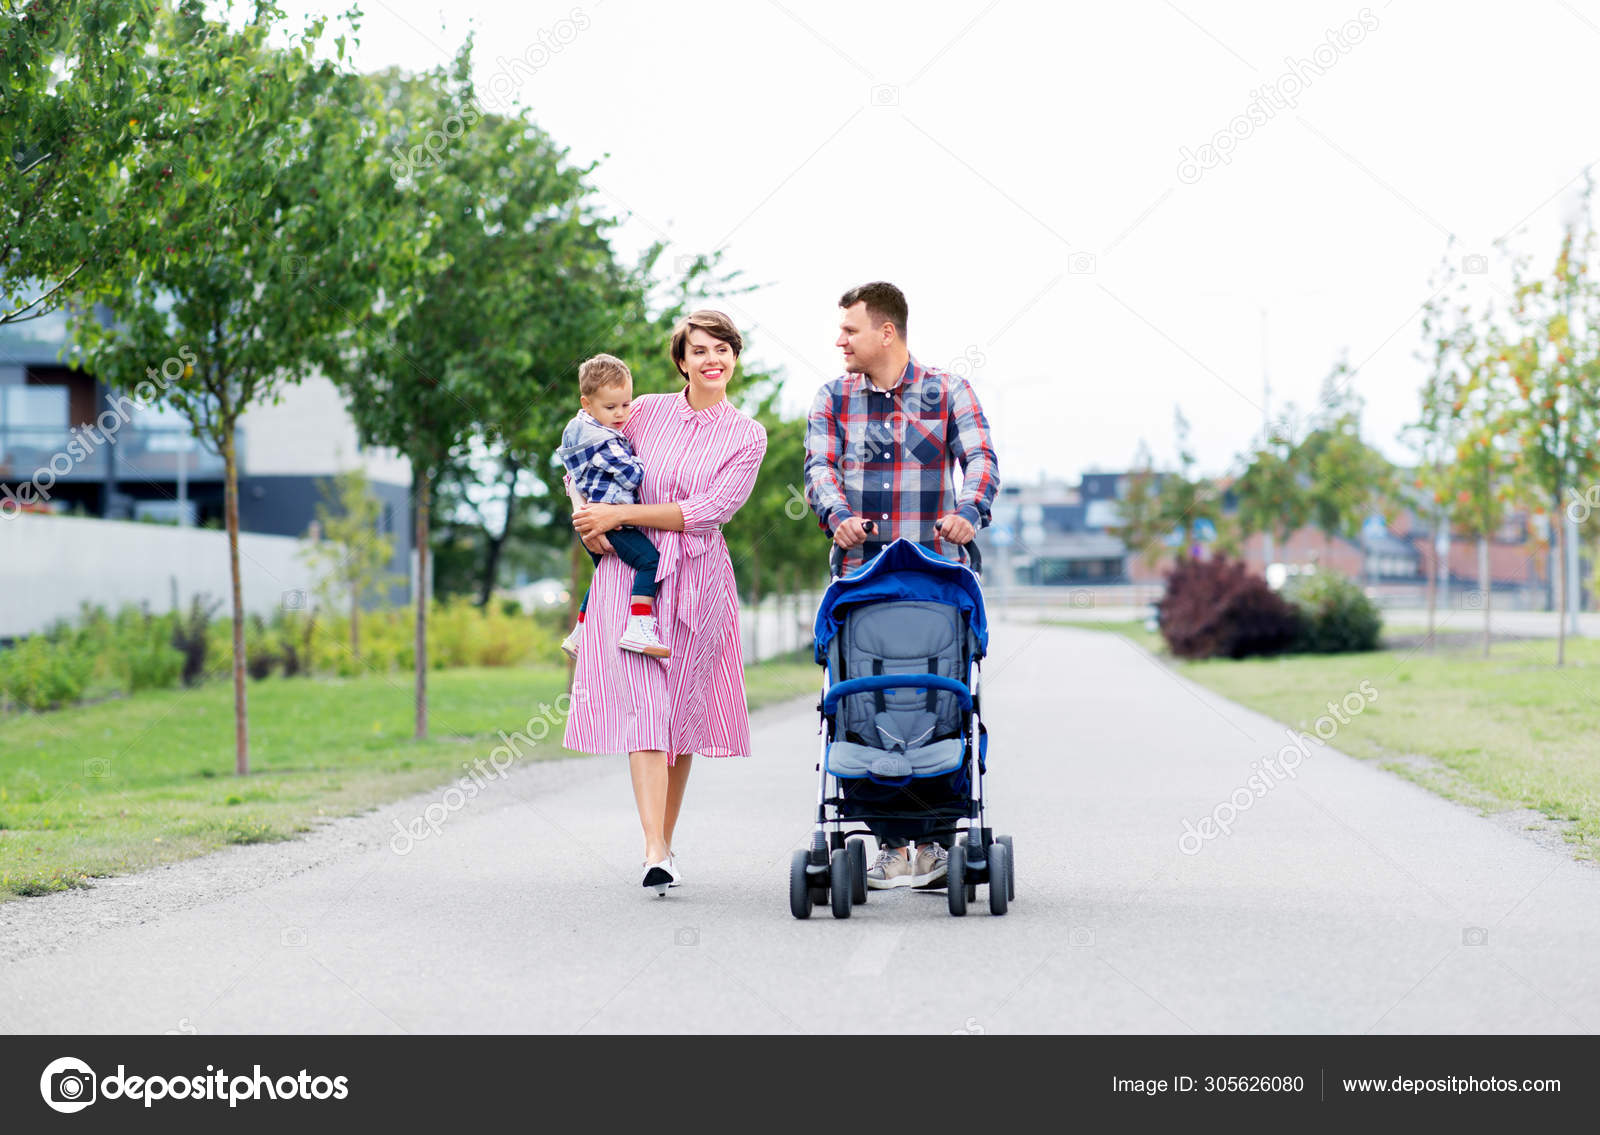 baby stroller family